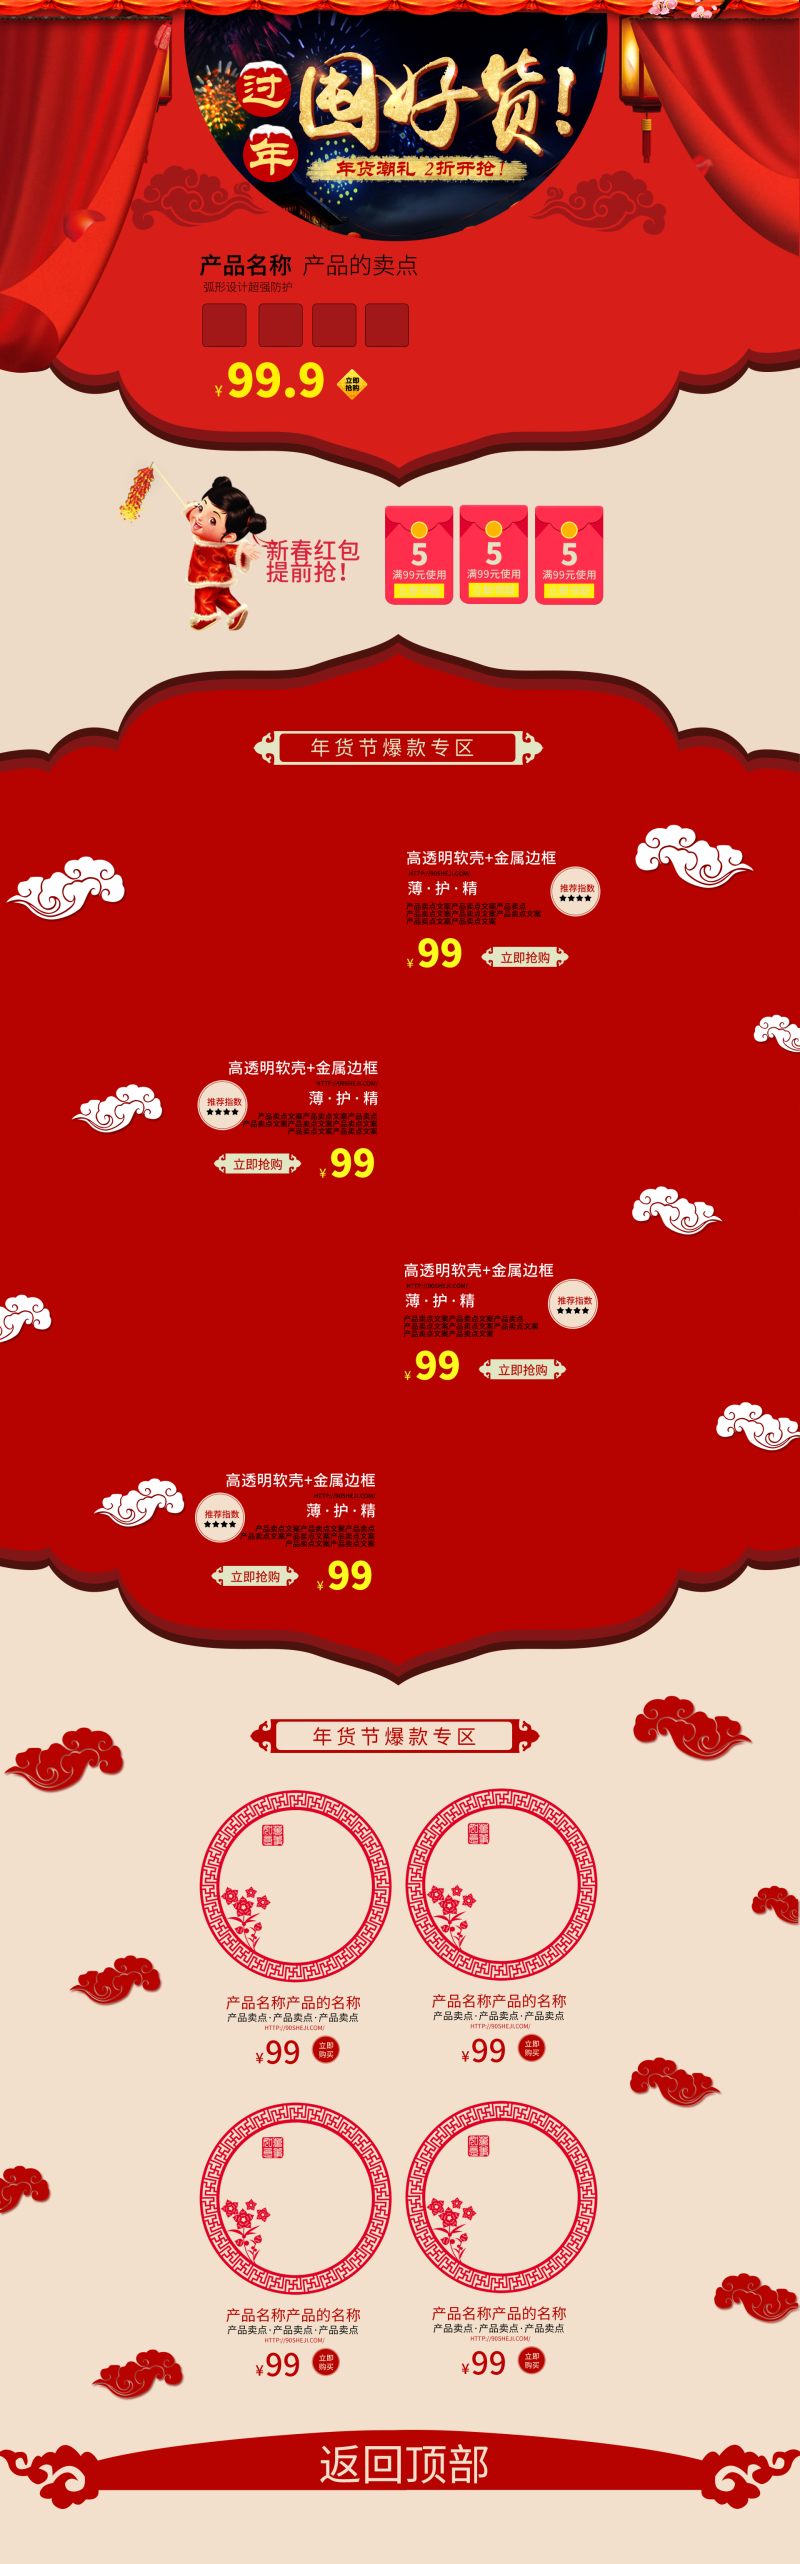 淘宝天猫中国风新年首页装修模板psd模板